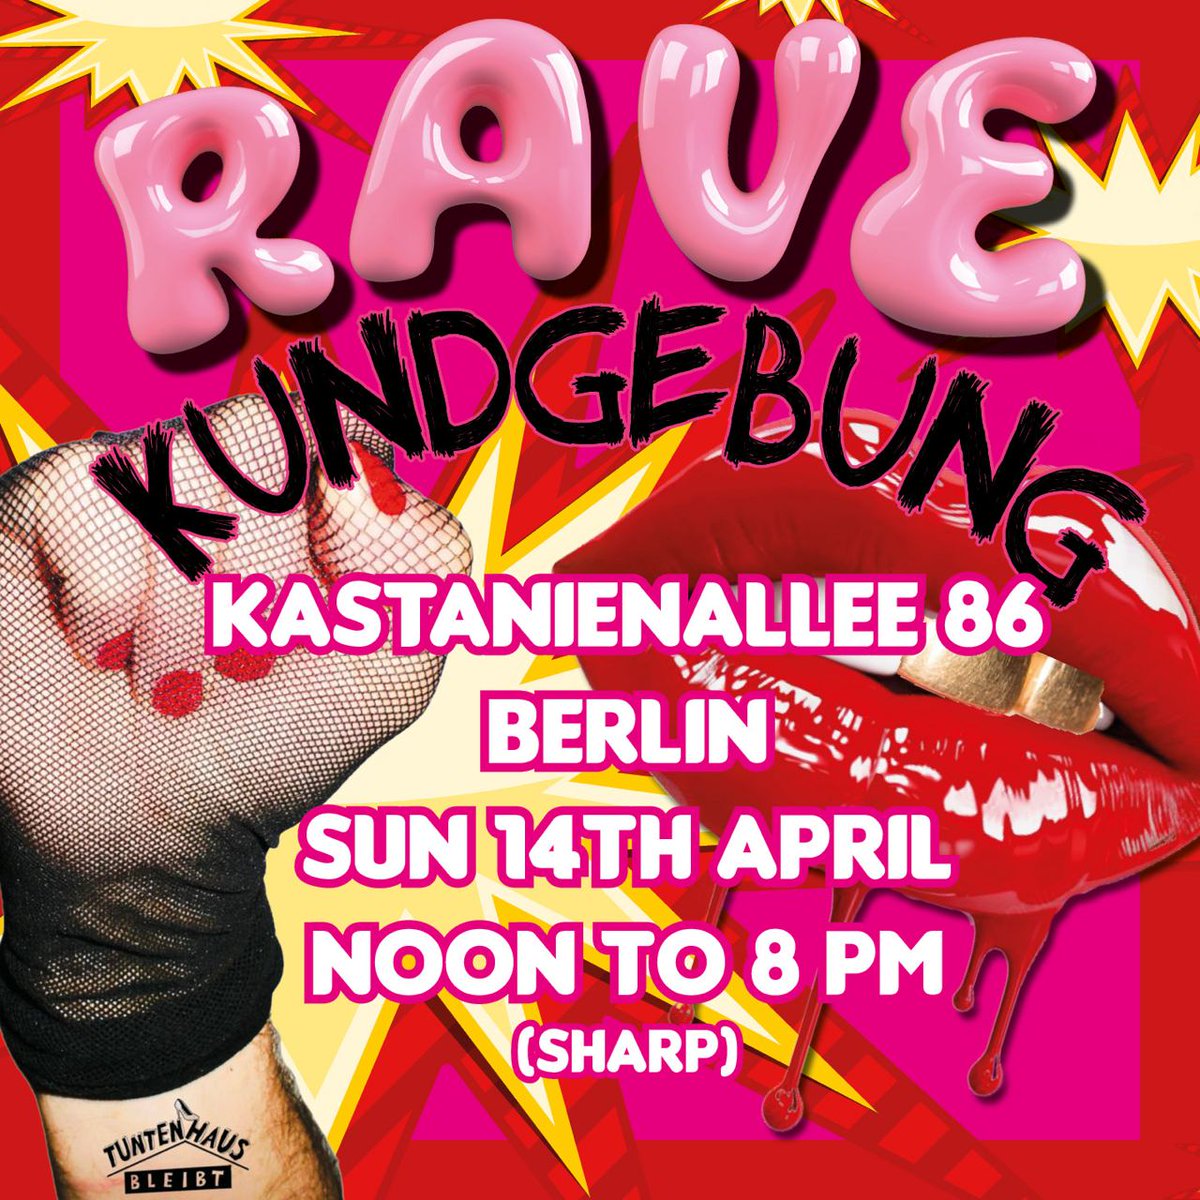 Die Zeit rennt! – Wir haben nur noch 4 Wochen!
Auf die Straße gegen Verdrängung, für den Erhalt eines queeren Berlins!
Rave-Kundgebung für und mit dem Tuntenhaus! Unterstützt unsere Forderung an den Berliner Senat!
Mit Redebeiträgen, Performances und DJs #b0504 #tuntenhausbleibt